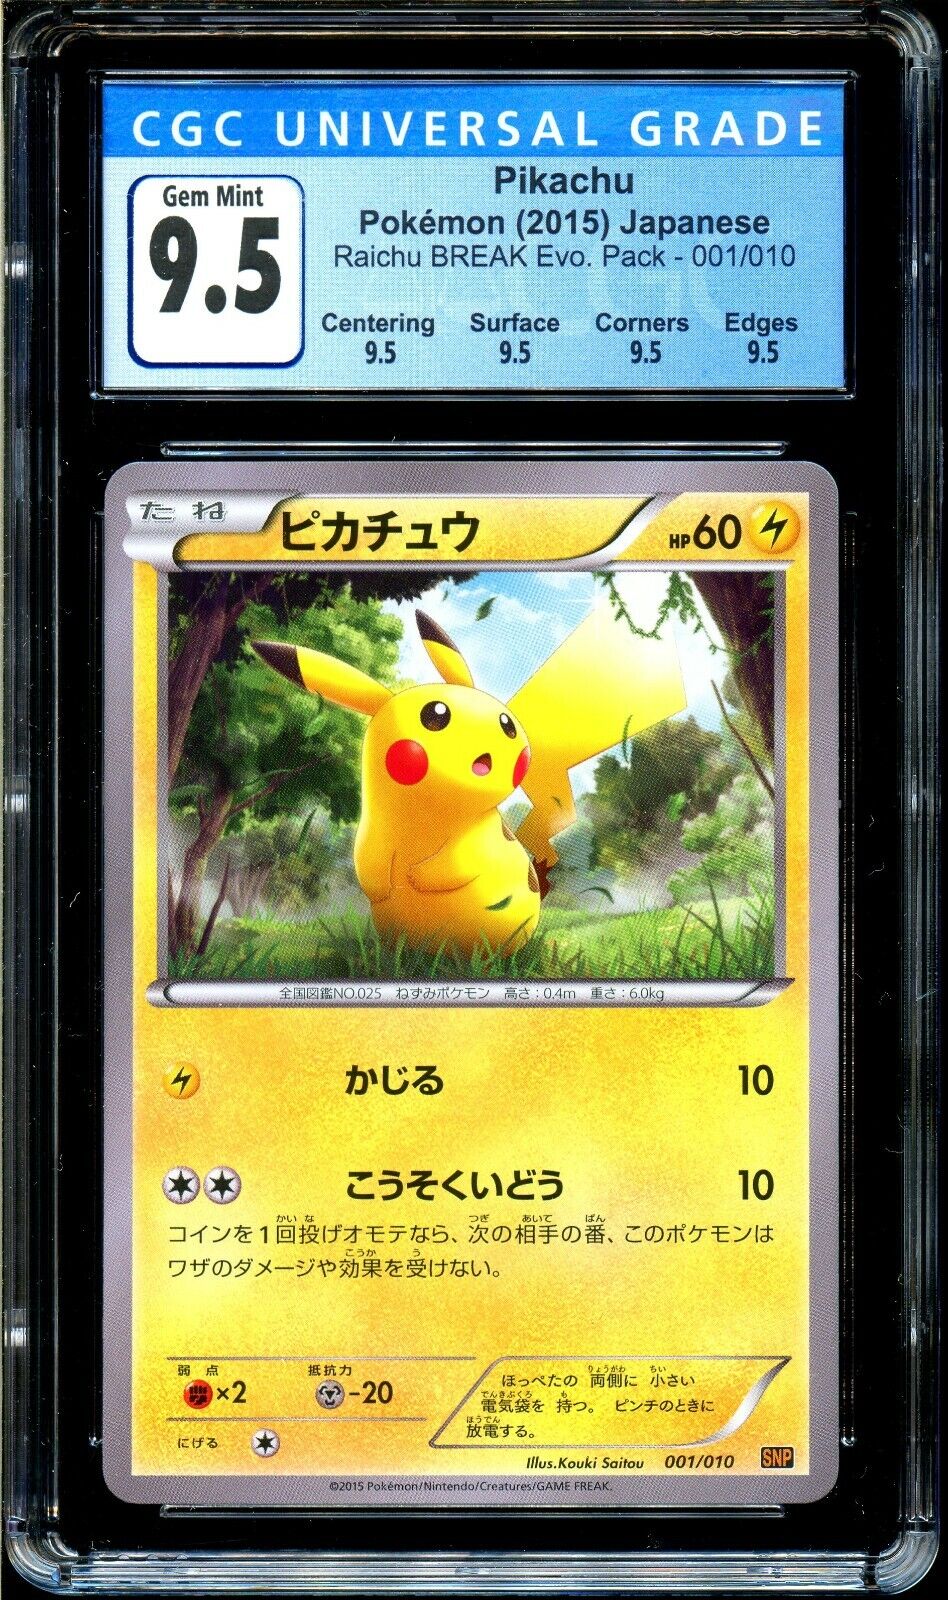 CGC 9.5 Pikachu 001/010 Raichu Break Evo Pack Japanese Pokemon Card PSA BGS Świetne oferty, popularna WYPRZEDAŻ